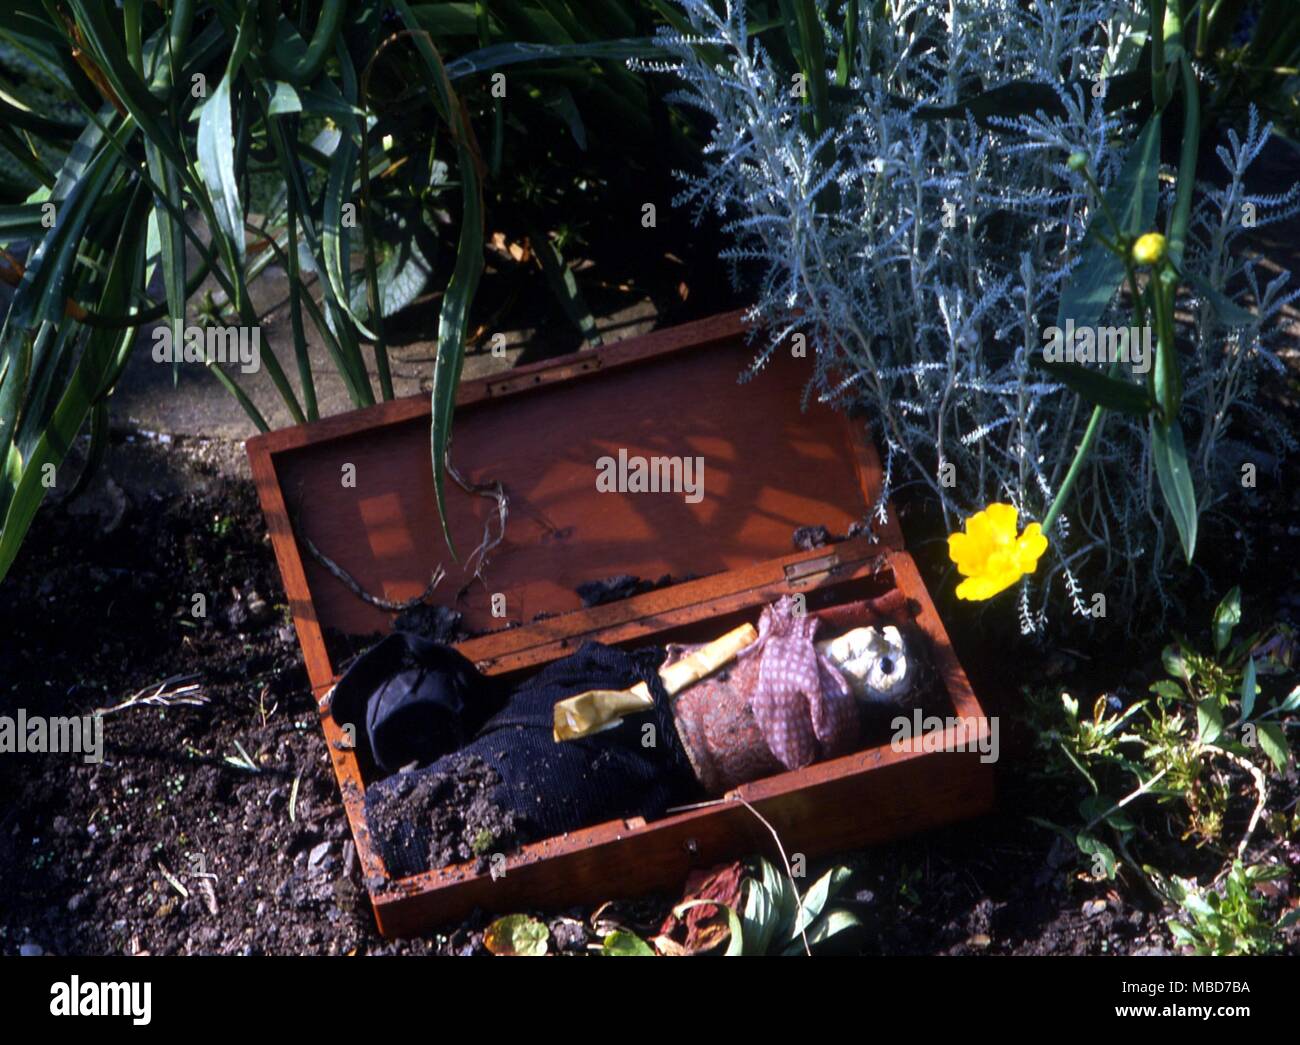 Una strega-fungo, modellato dopo una persona ad essere ammaliati, e sepolto a portare circa la morte della vittima. Foto Stock